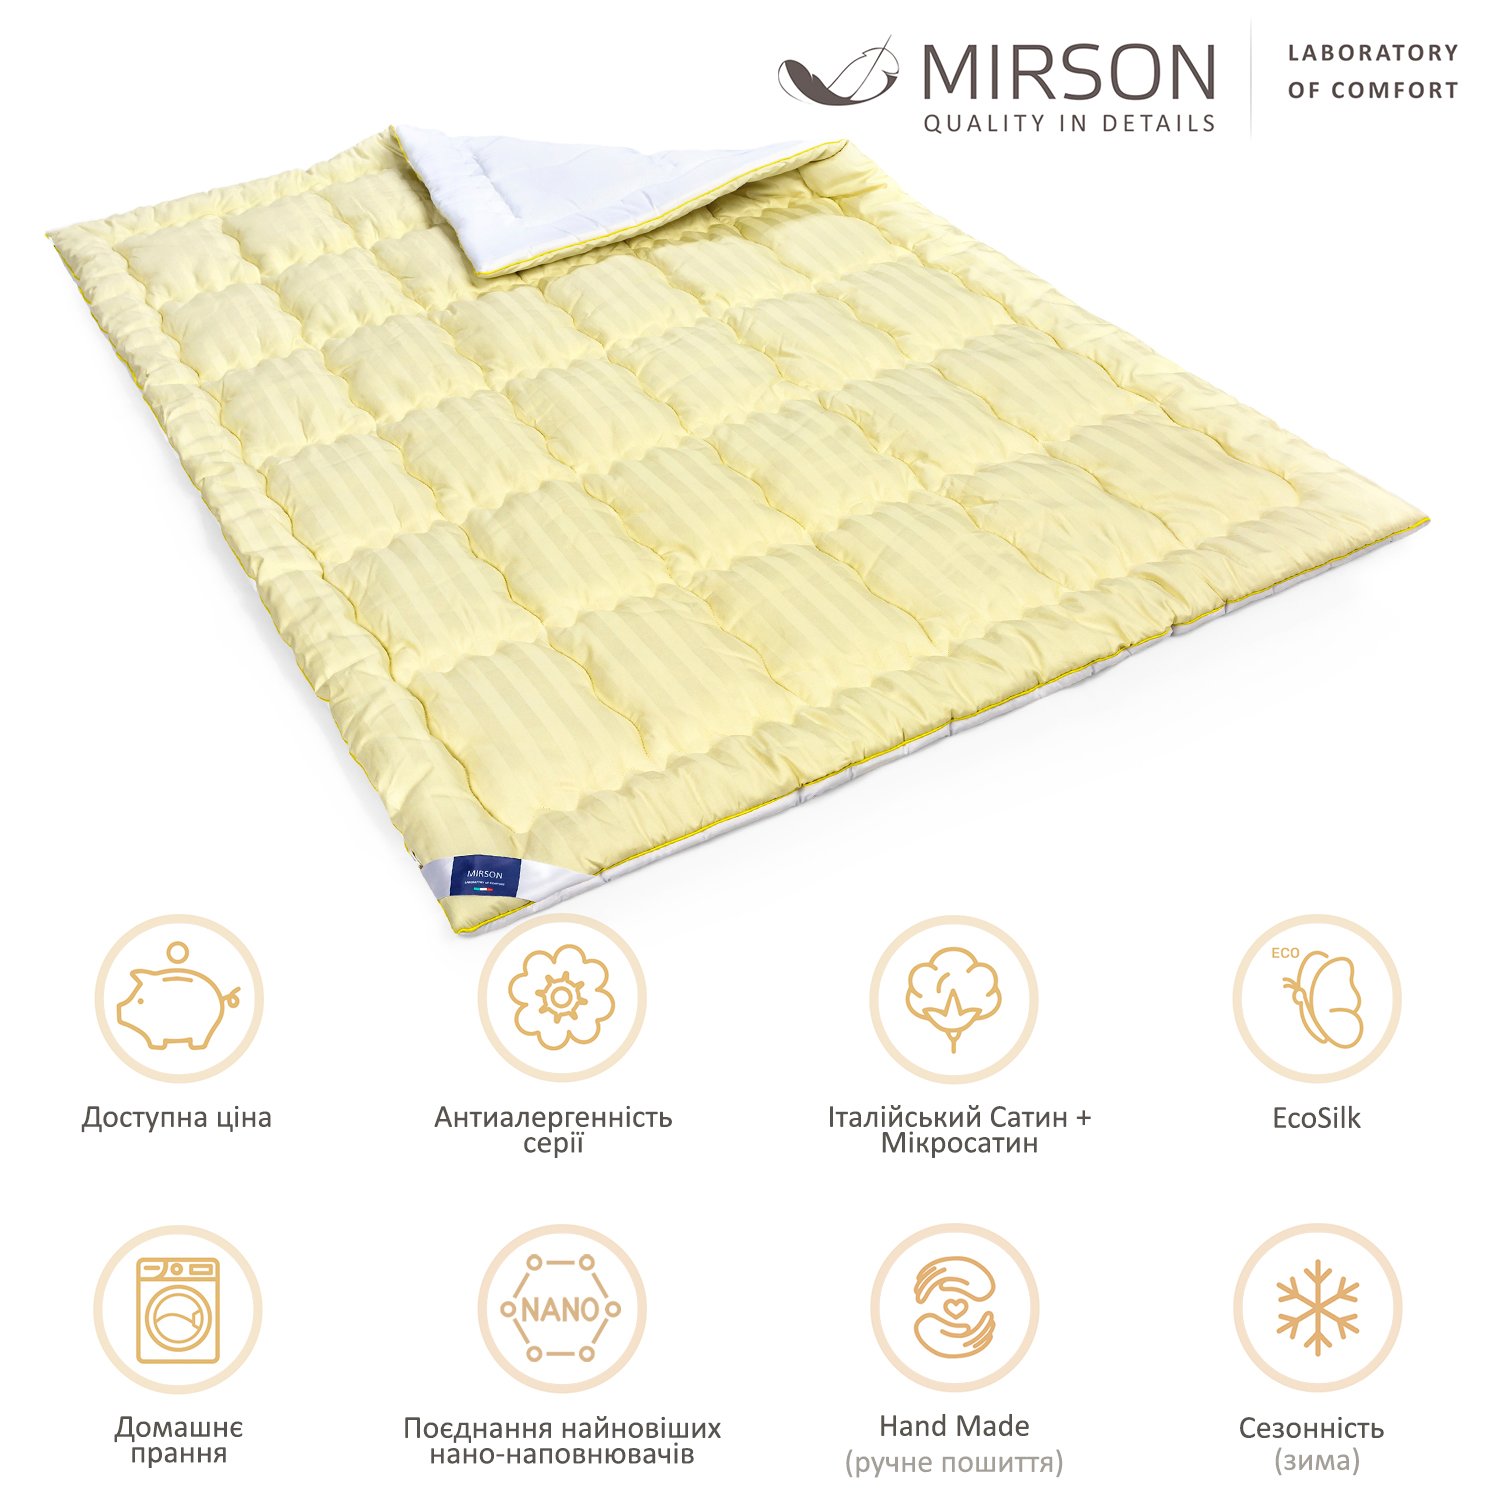 Одеяло антиаллергенное MirSon Carmela Hand Made EcoSilk №0555, зимнее, 155x215 см, желто-белое - фото 6